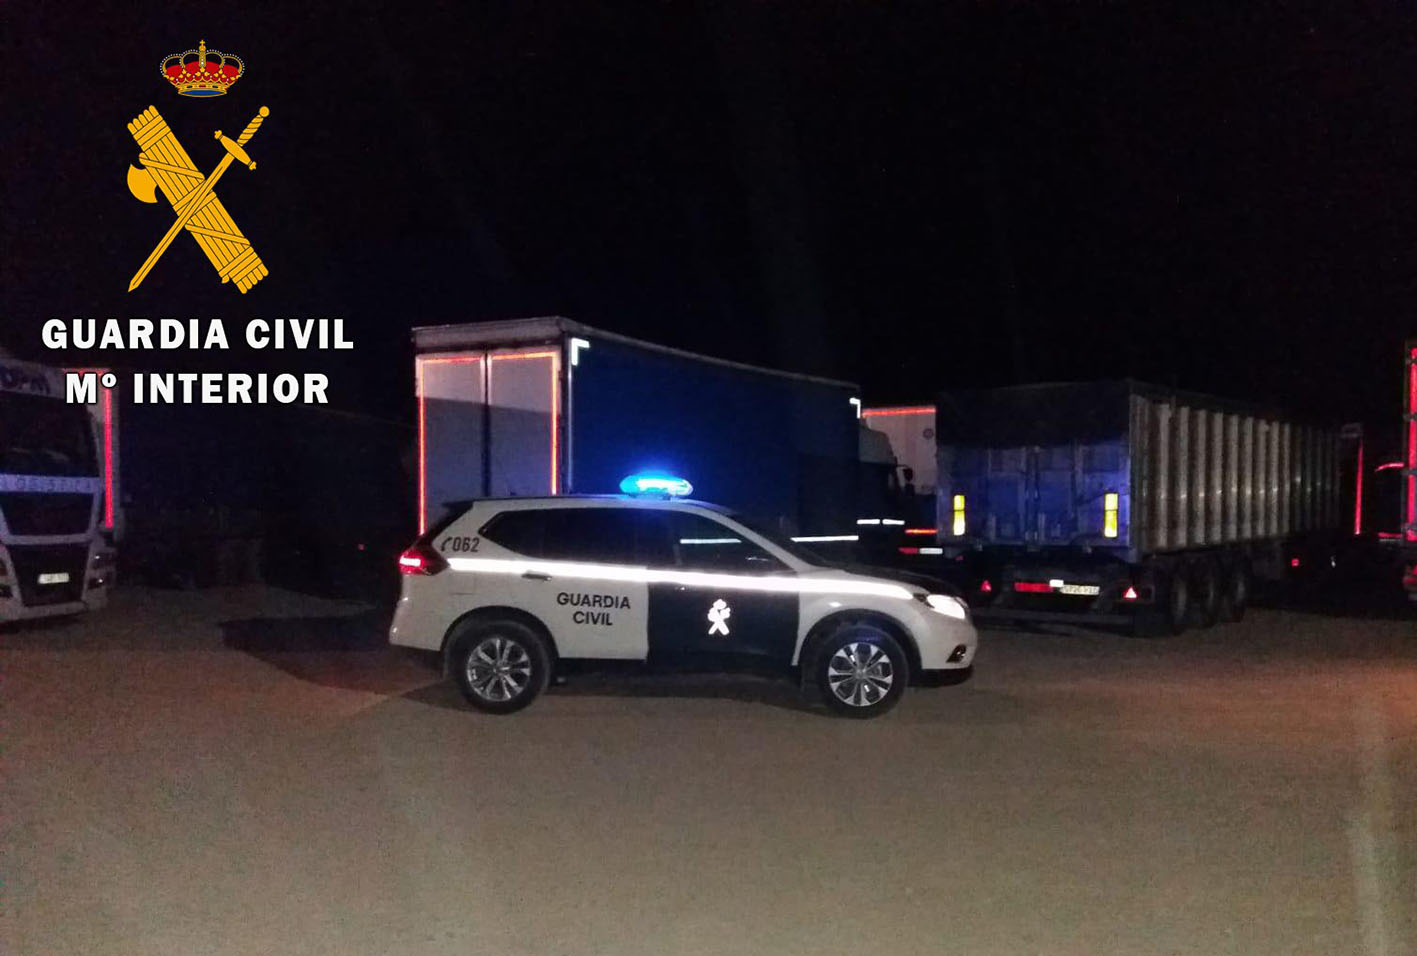 La Guardia Civil los sorprendió cuando ya habían rajado la lona de uno de los camiones estacionados en el área de descanso